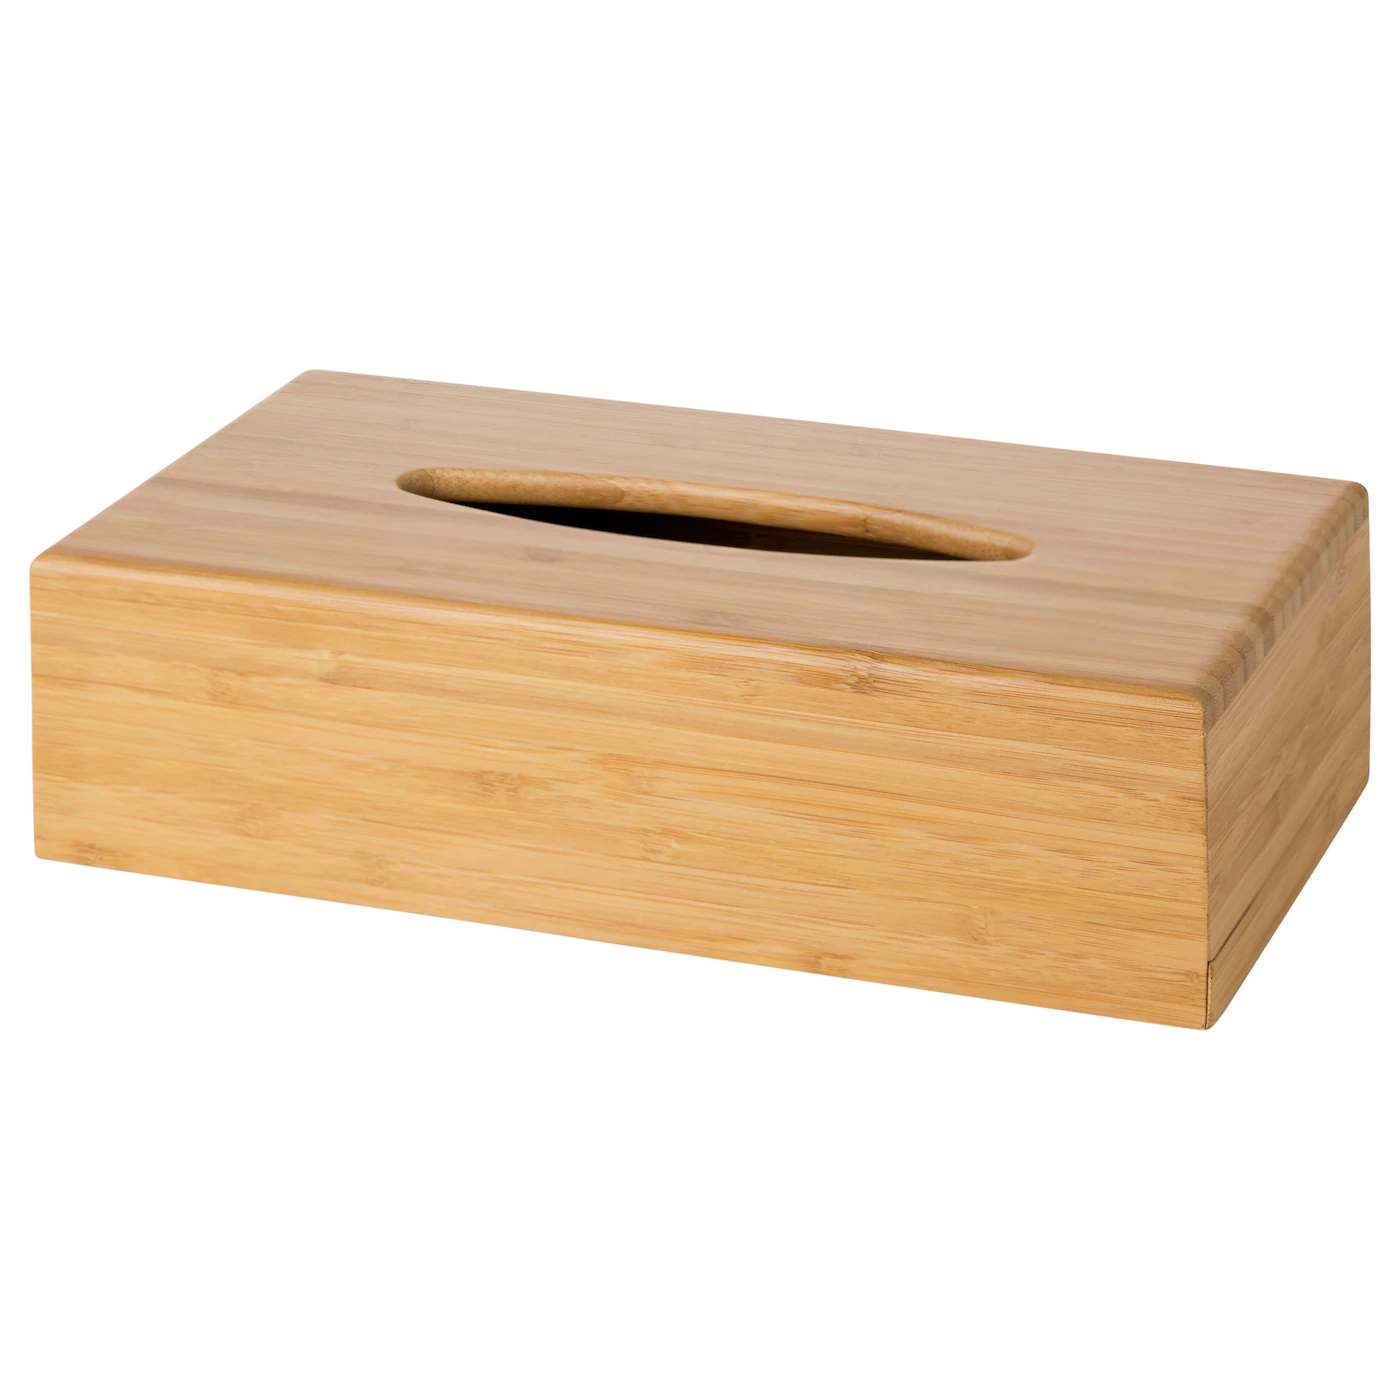 bondlian-caja-panuelos-bambu_0409819_pe570229_s5.jpg